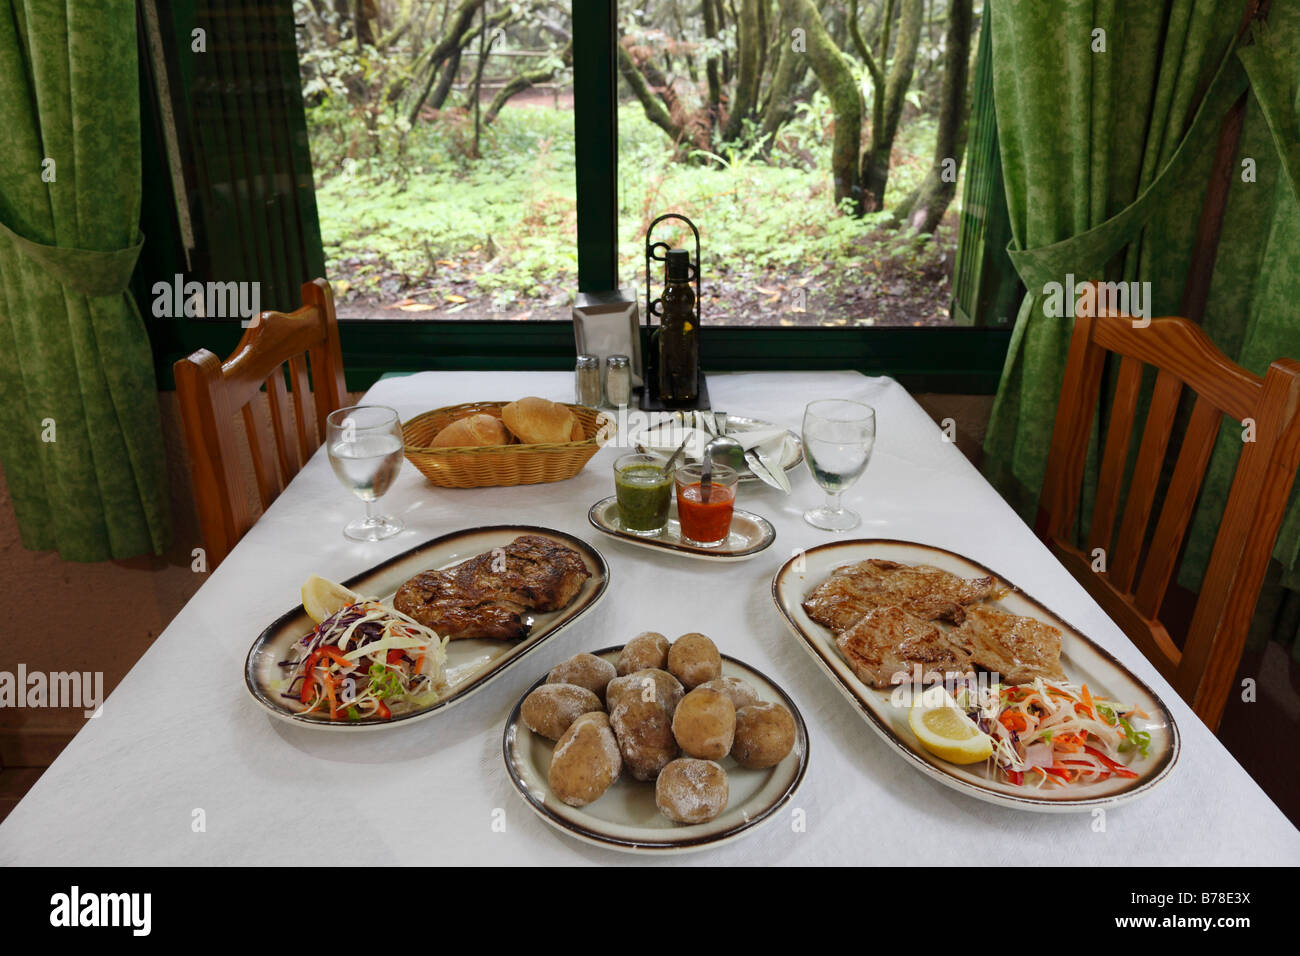 Piatti a base di carne nella Laguna Grande ristorante, Parco Nazionale di Garajonay, La Gomera, isole Canarie, Spagna, Europa Foto Stock